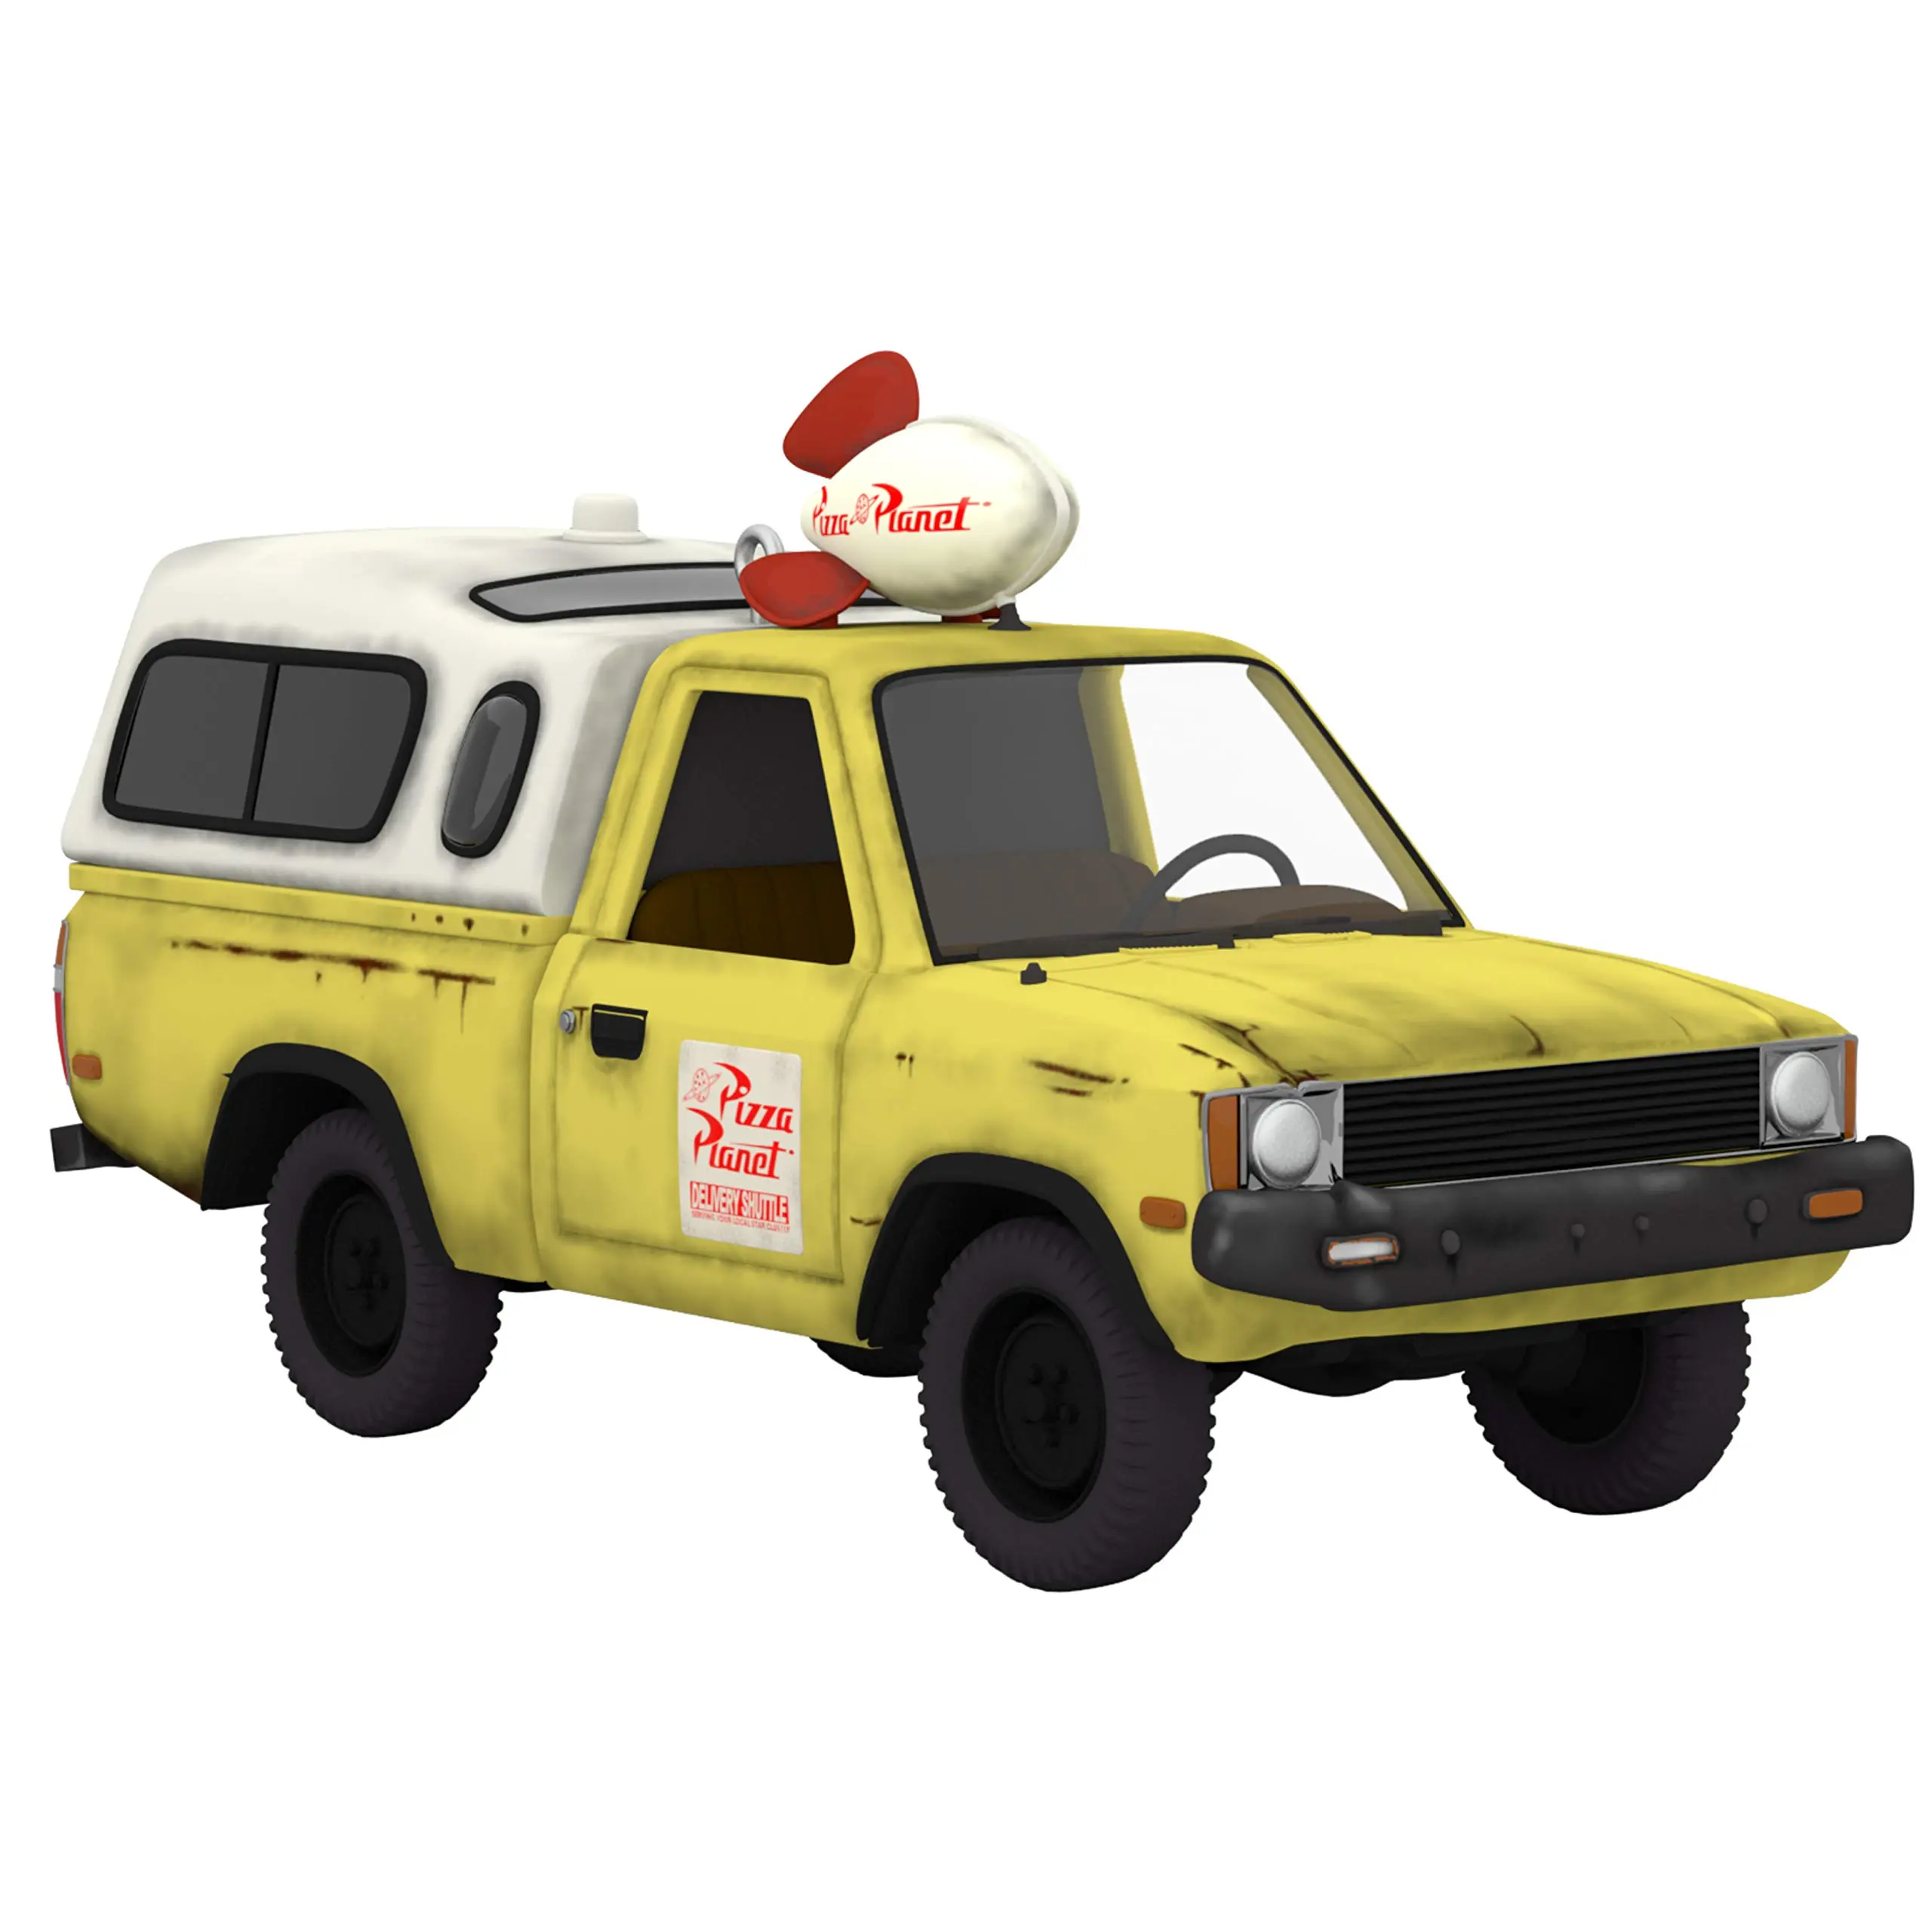 camioneta pizza planet - Cómo se llama la pizzería de Toy Story